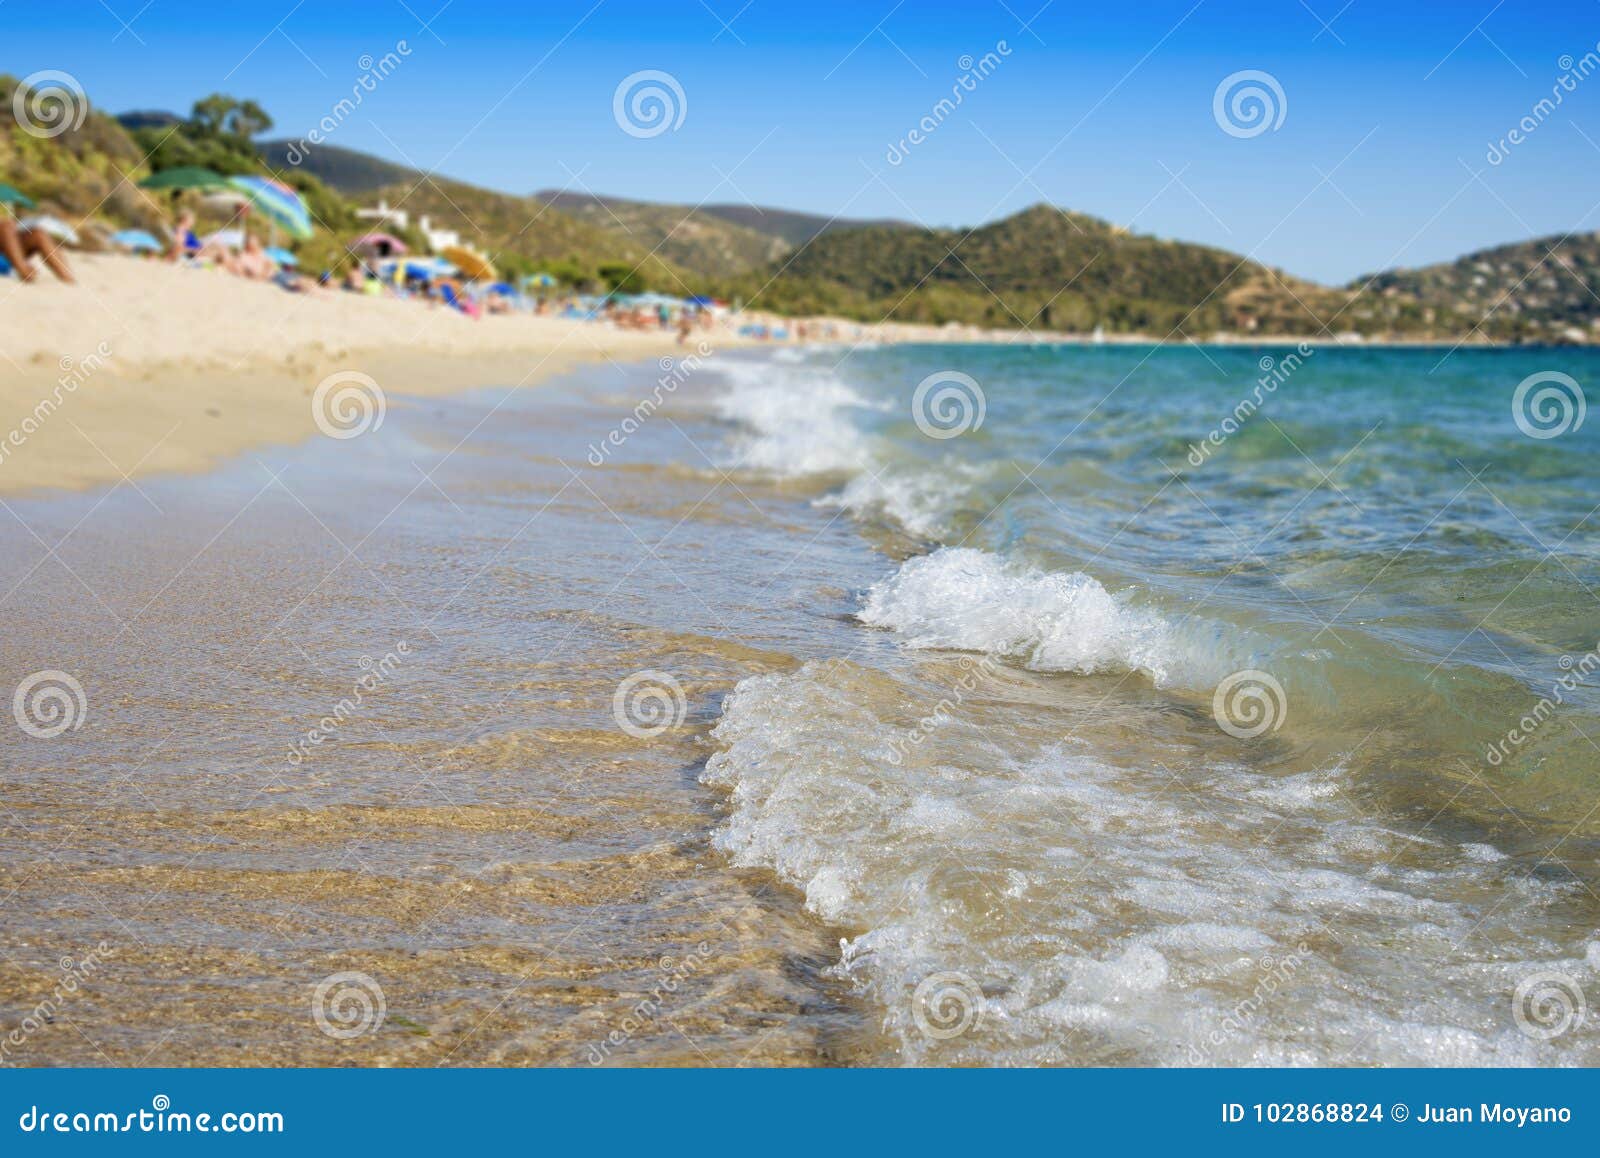 spiaggia de kala e moru beach in sardinia, italy